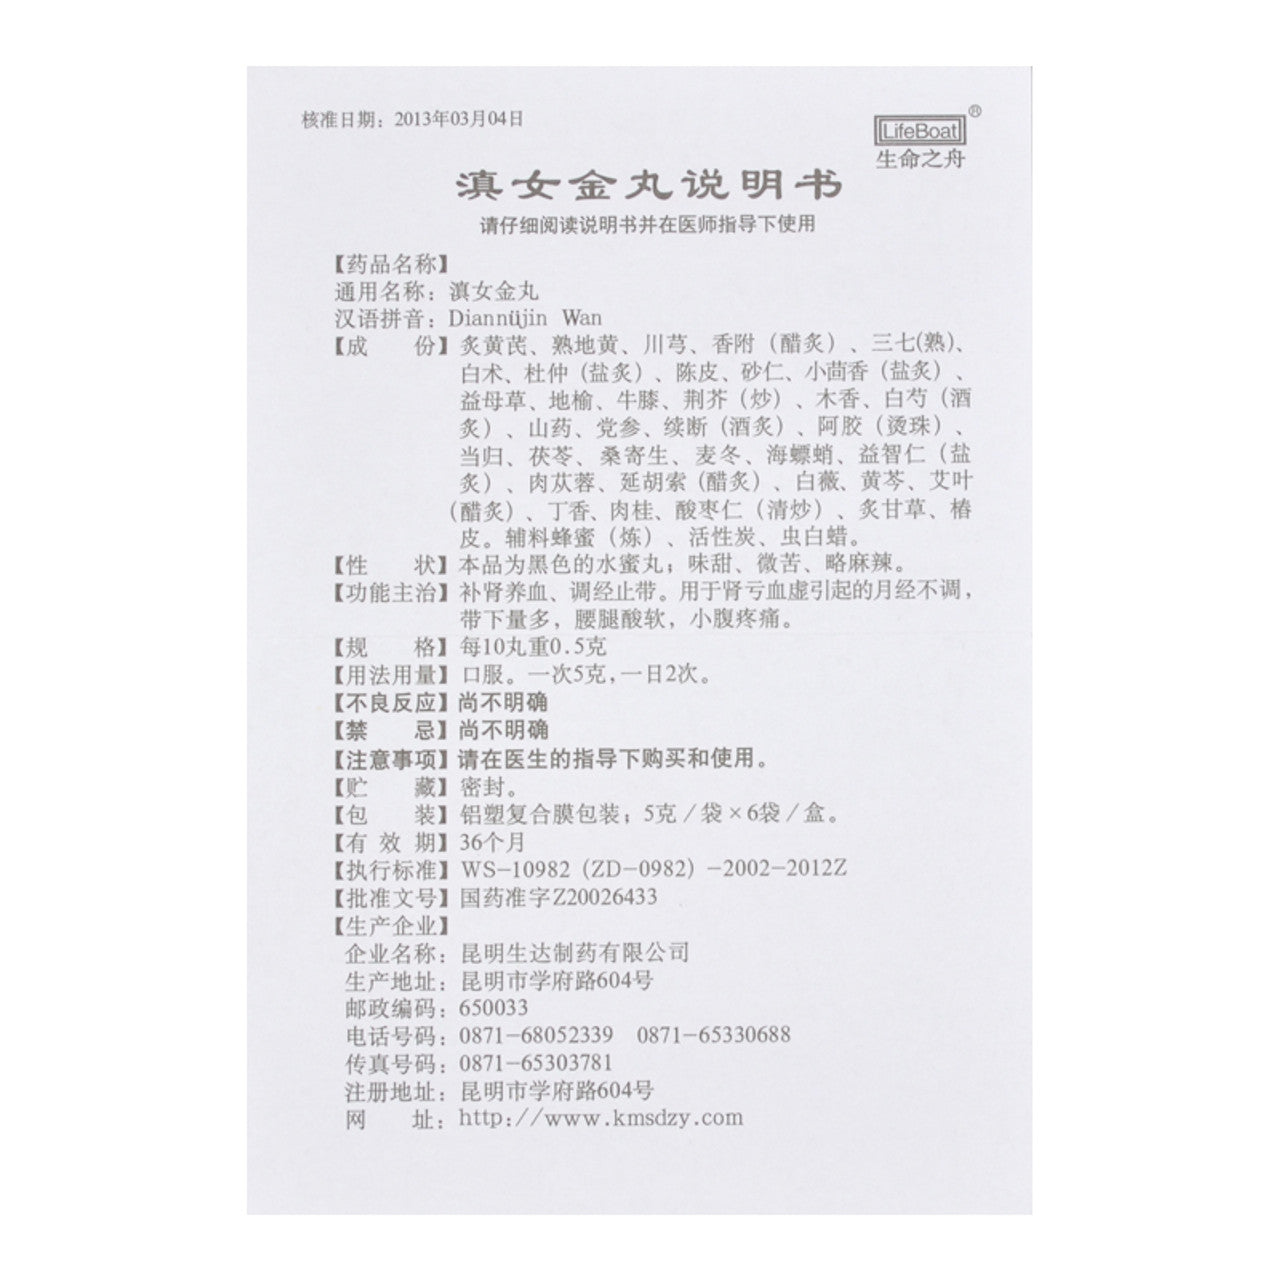 China Herb. Dian Nv Jin Wan / Dian Nu Jin Wan / Diannvjin Wan / Diannujin Wan / Diannujin Pills for Irregular Menstruation